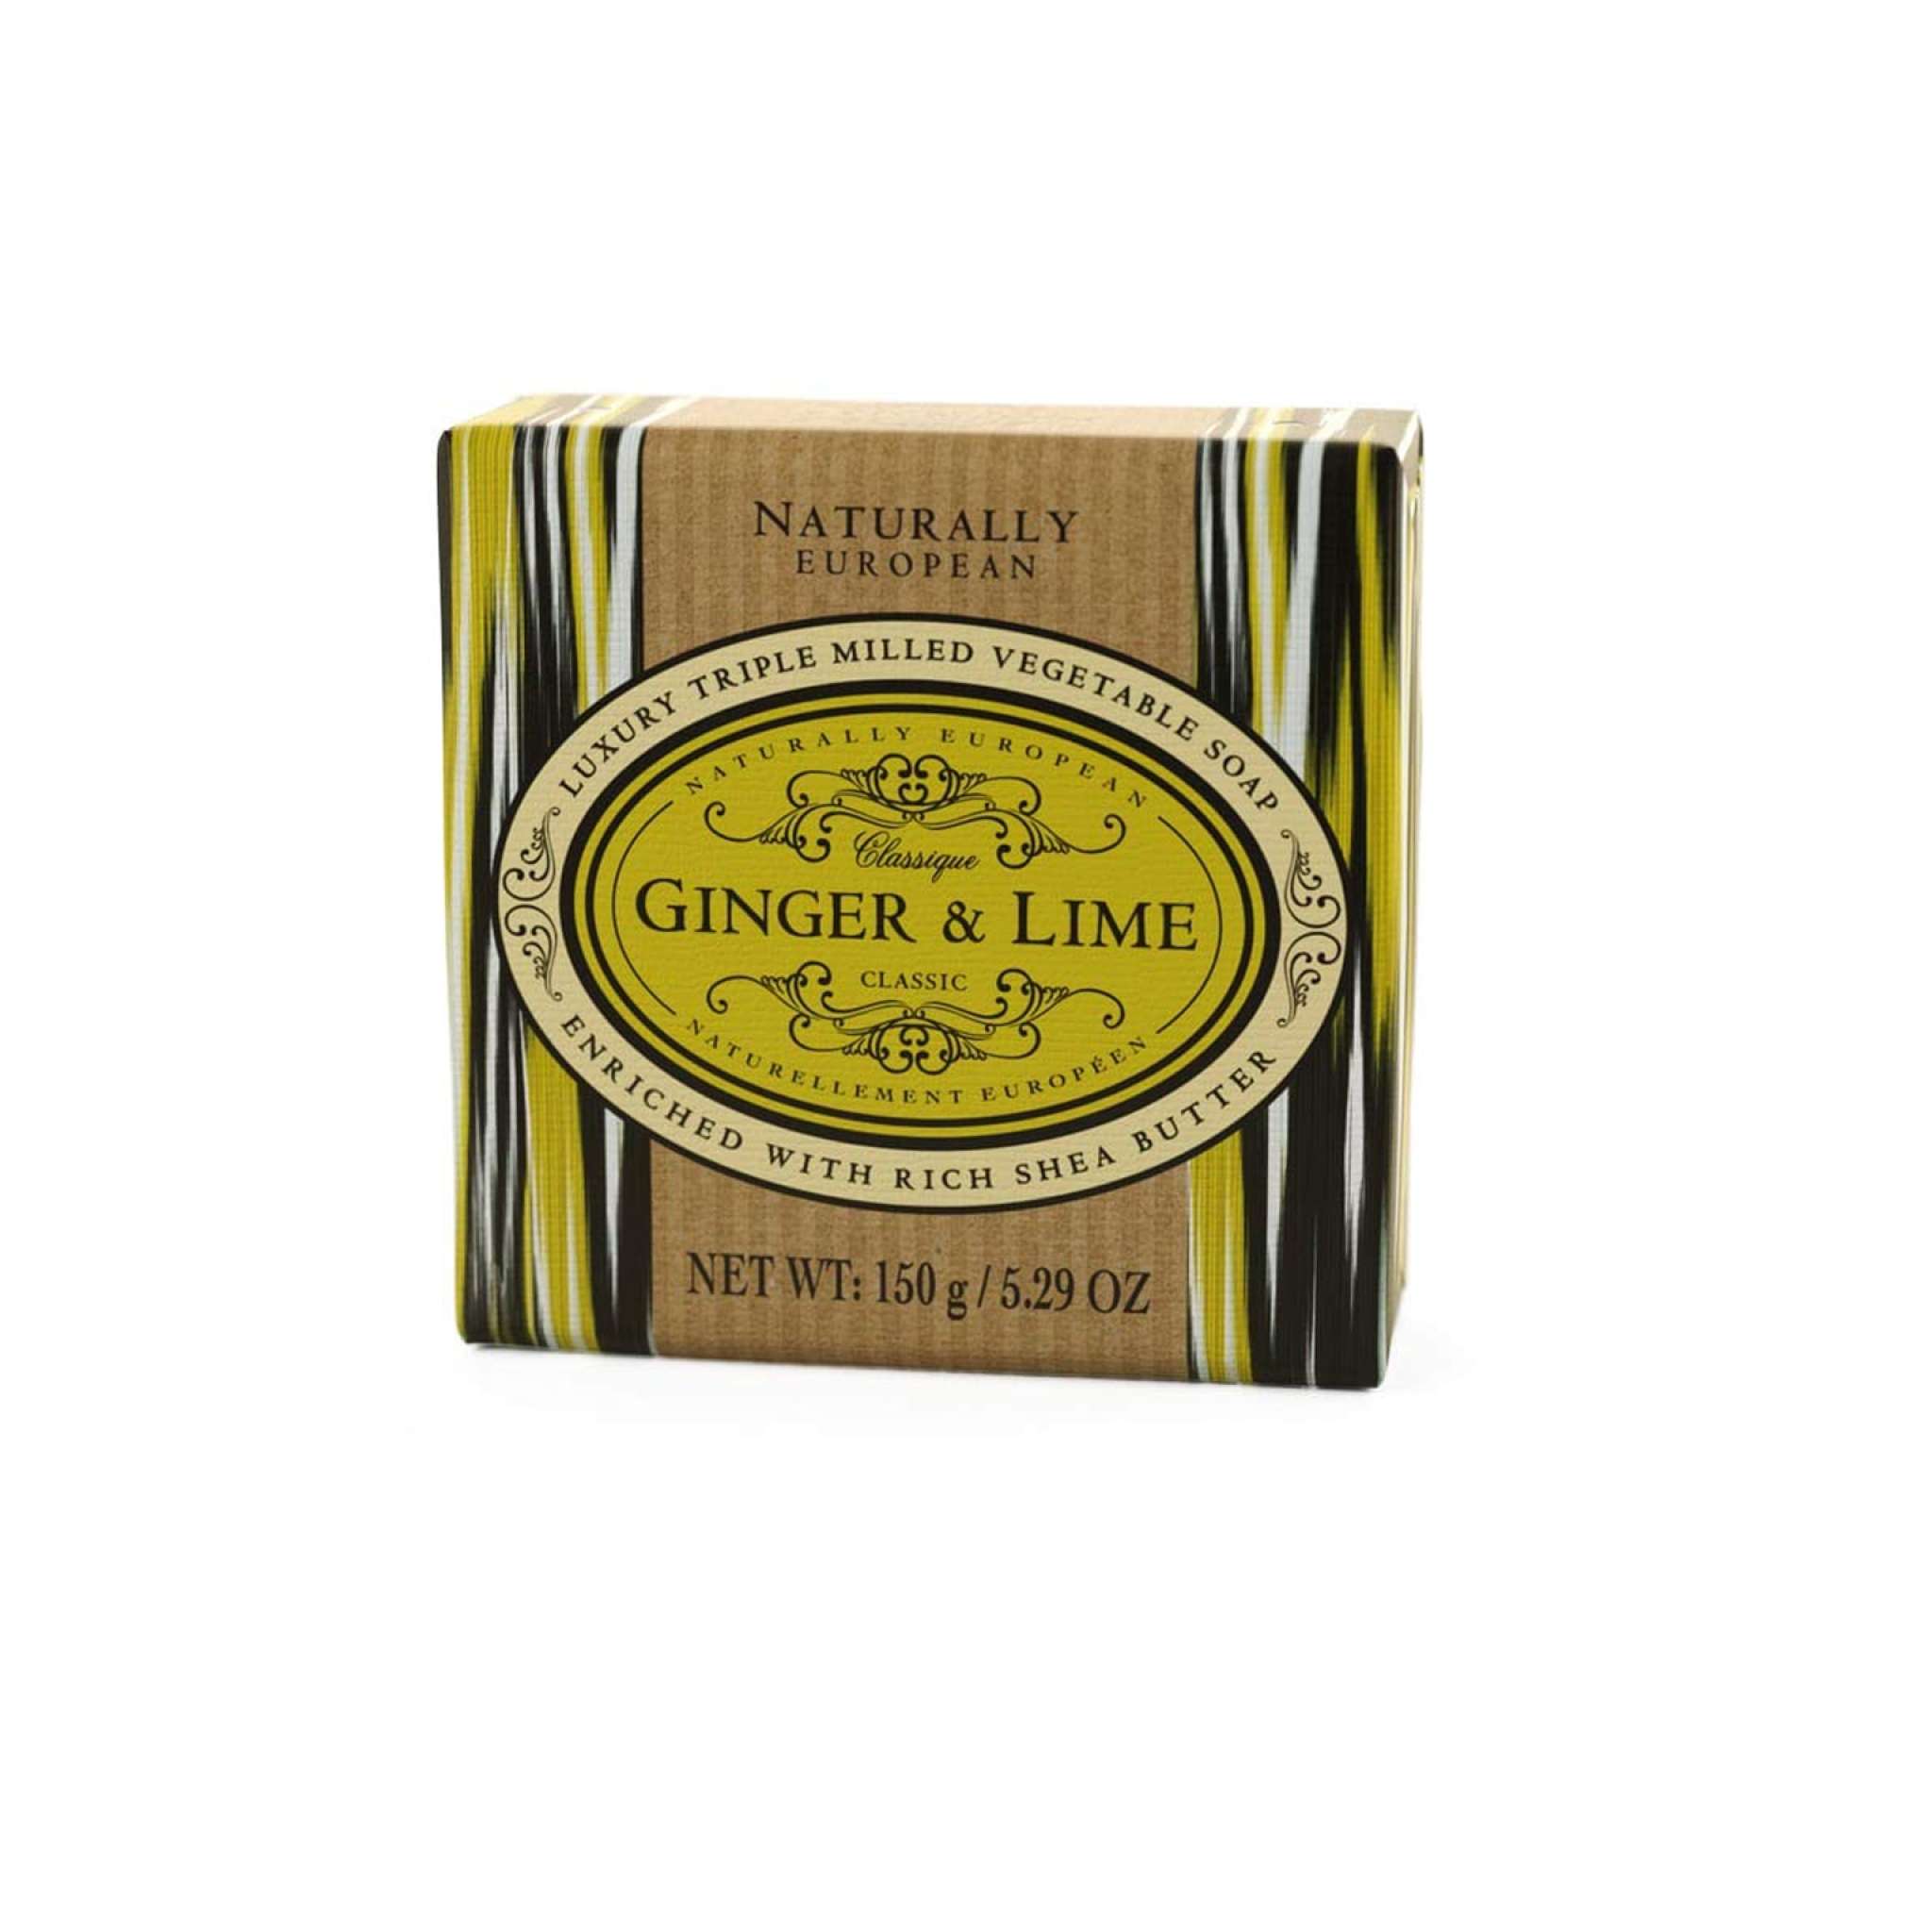 Ginger & Lime Naturally European såpe